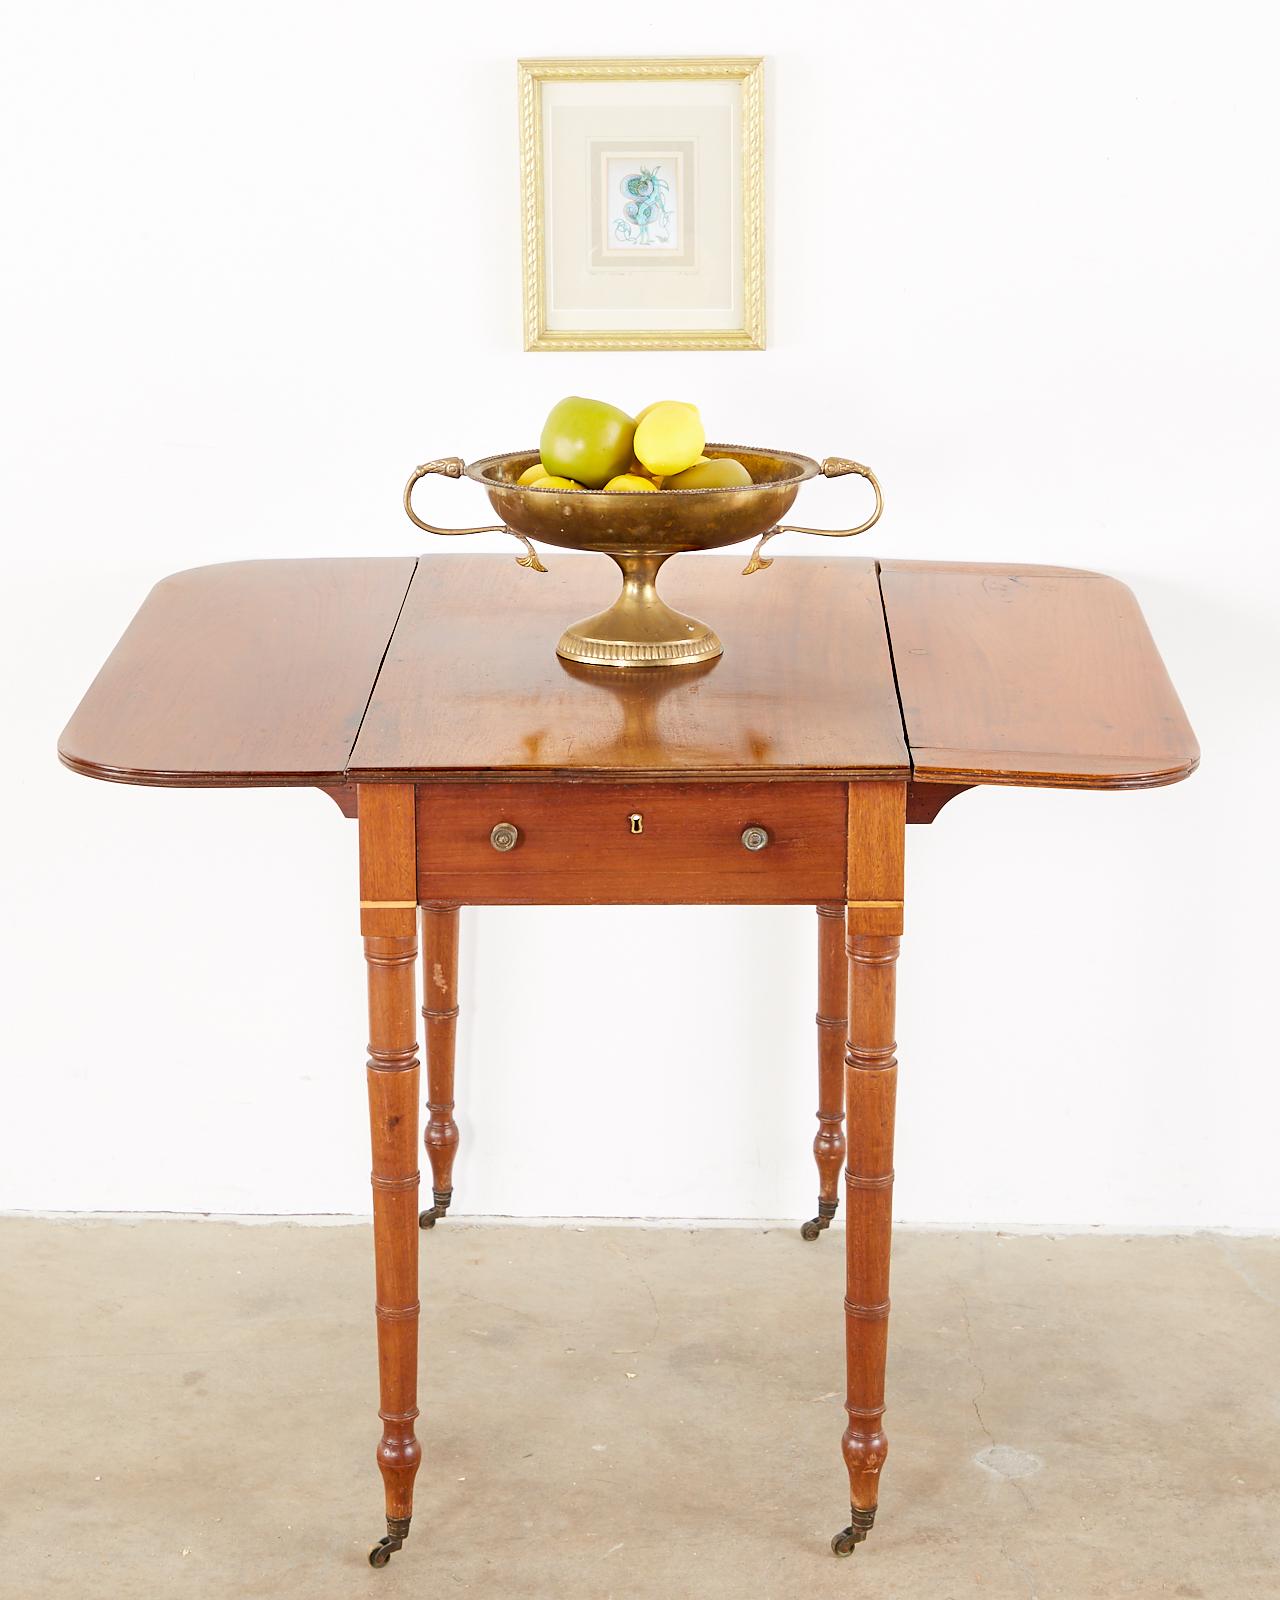 Einzigartiger englischer Pembroke-Tisch aus dem 19. Jahrhundert mit hängenden Blättern im Regency-Stil. Das Gehäuse aus Mahagoniholz wird von Beinen aus Bambusimitat getragen, die mit Tupie-Füßen und Rollen enden. Die Tischplatte misst im geöffneten